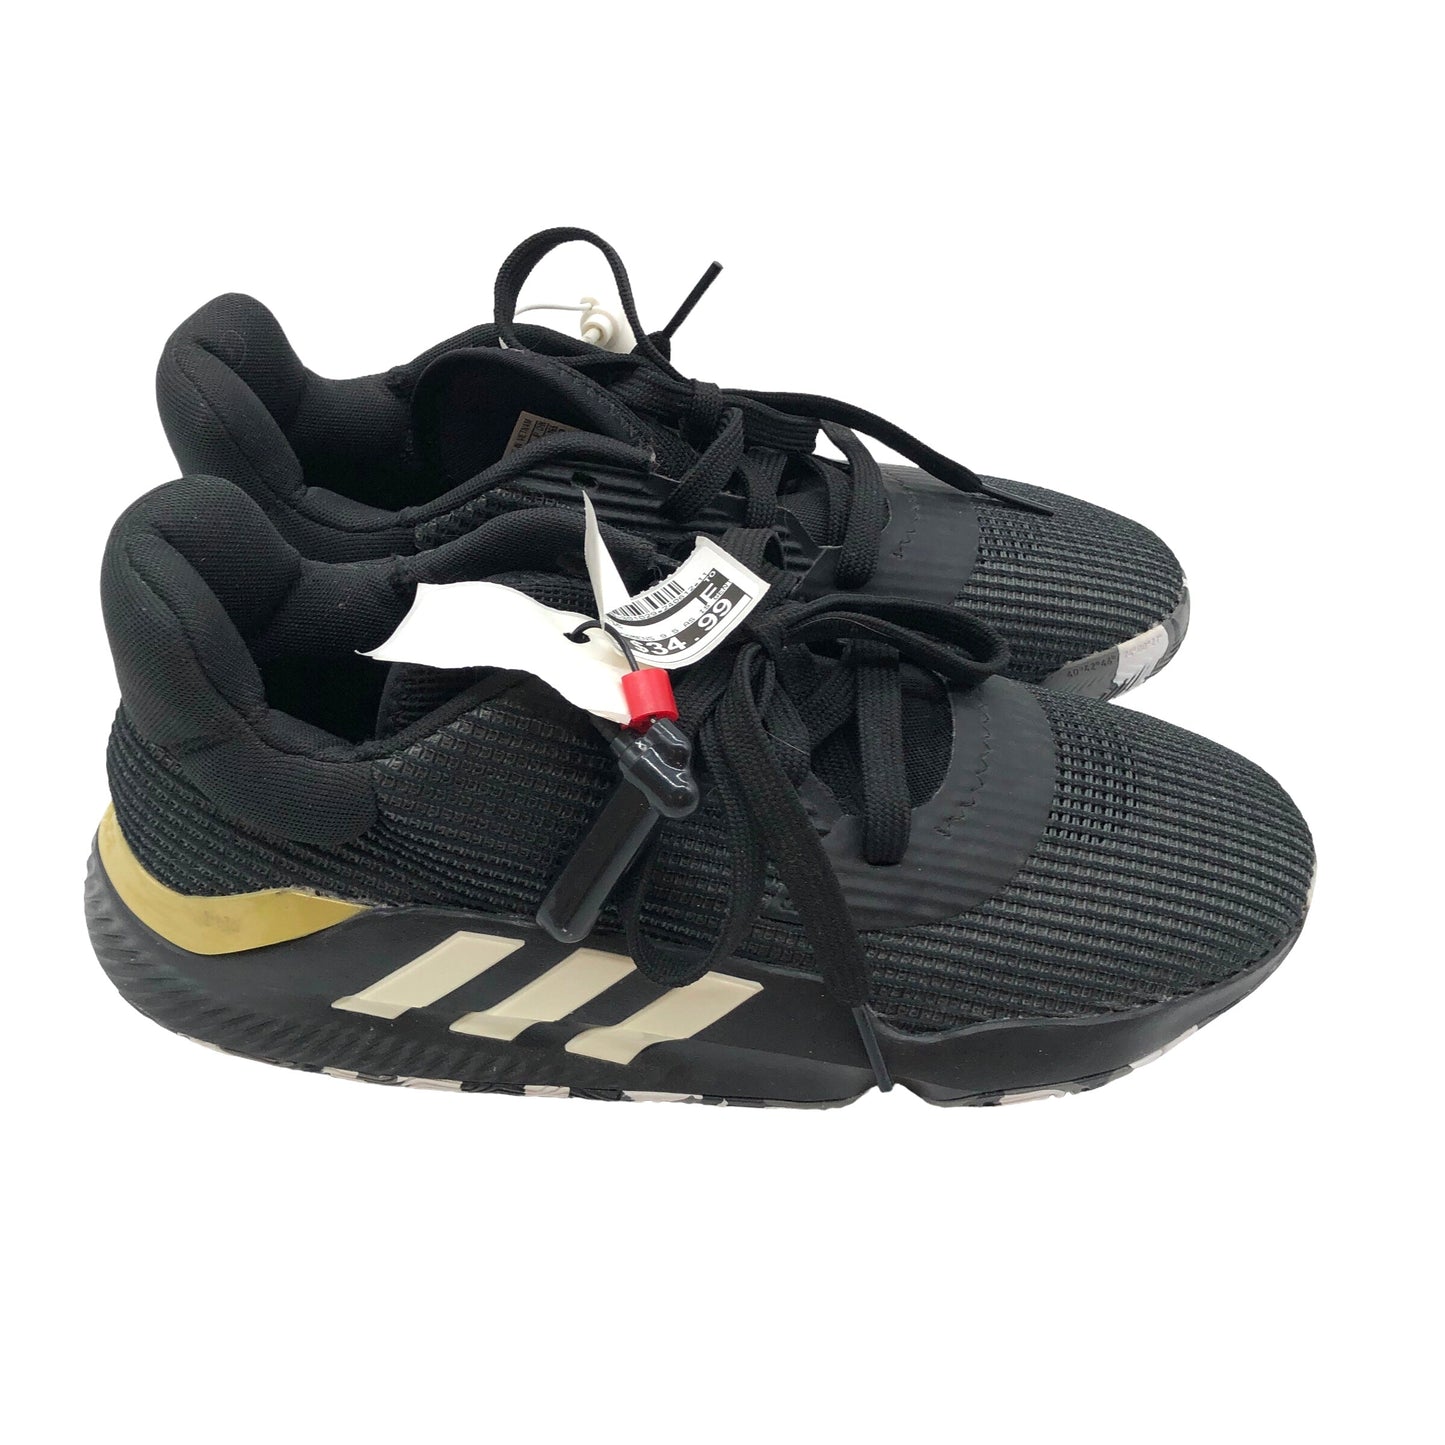 Black Shoes Athletic Adidas, Size 11